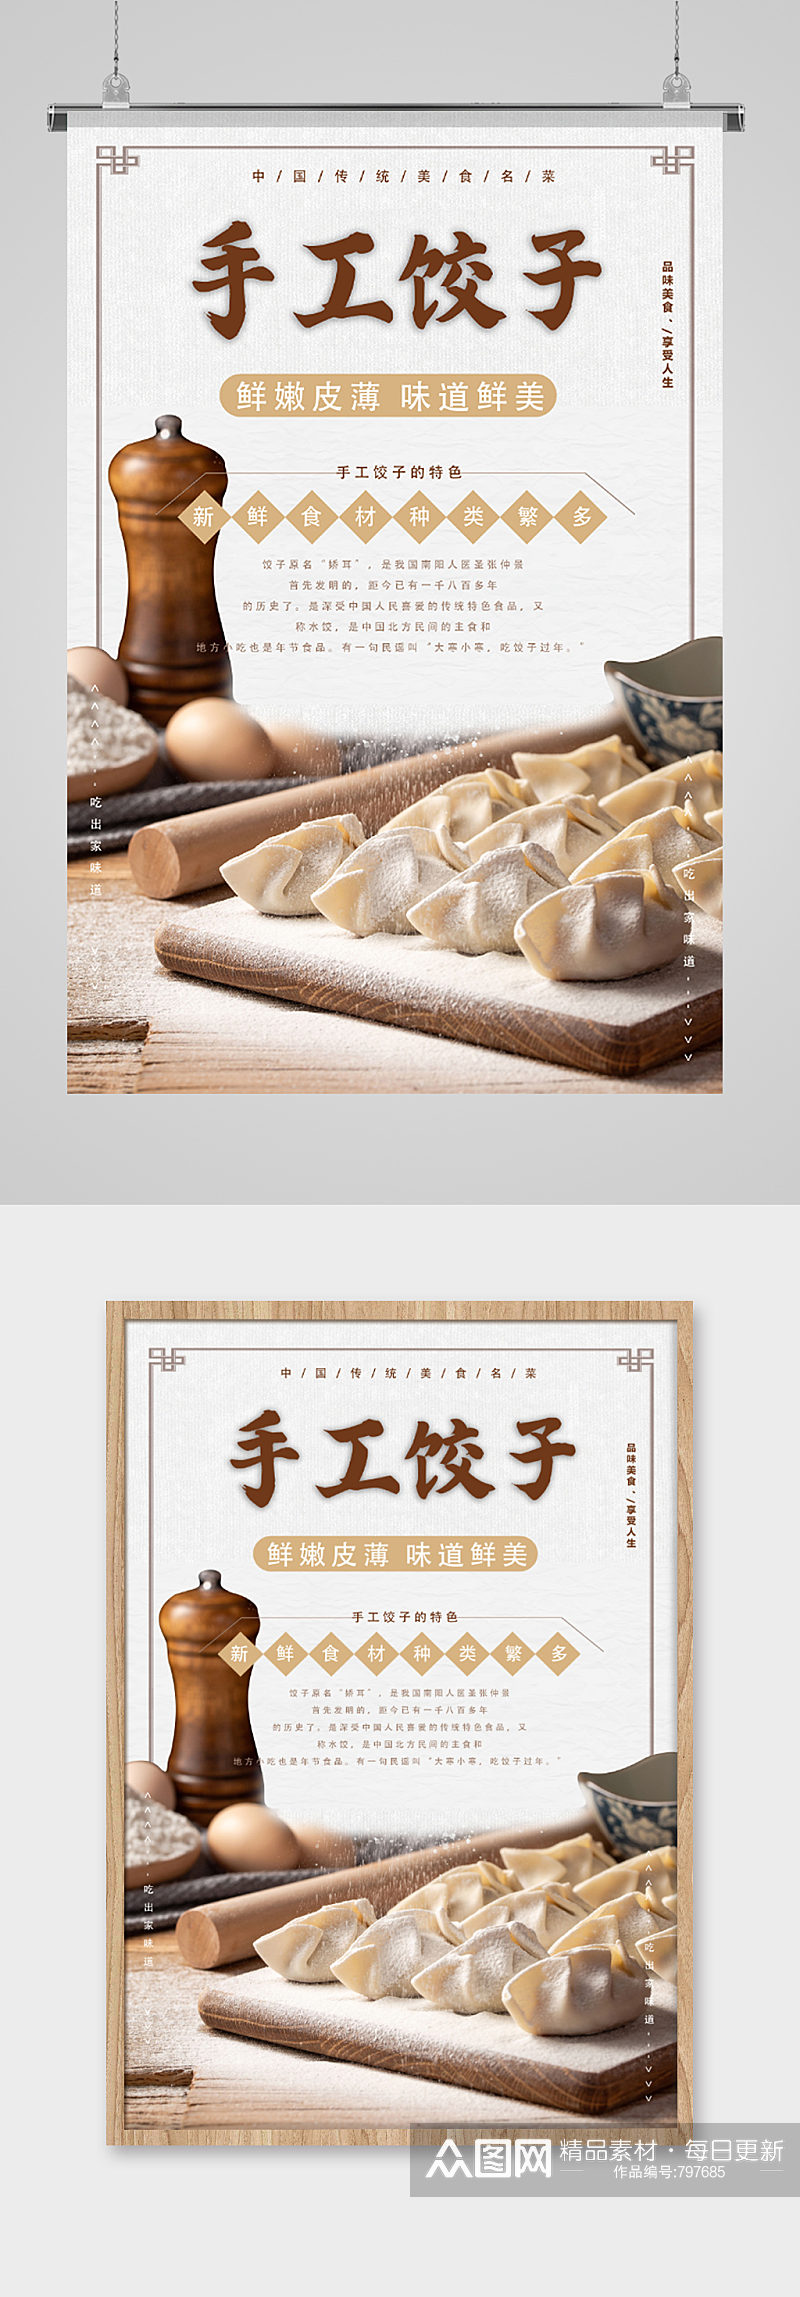 中国传统美食手工饺子宣传海报素材